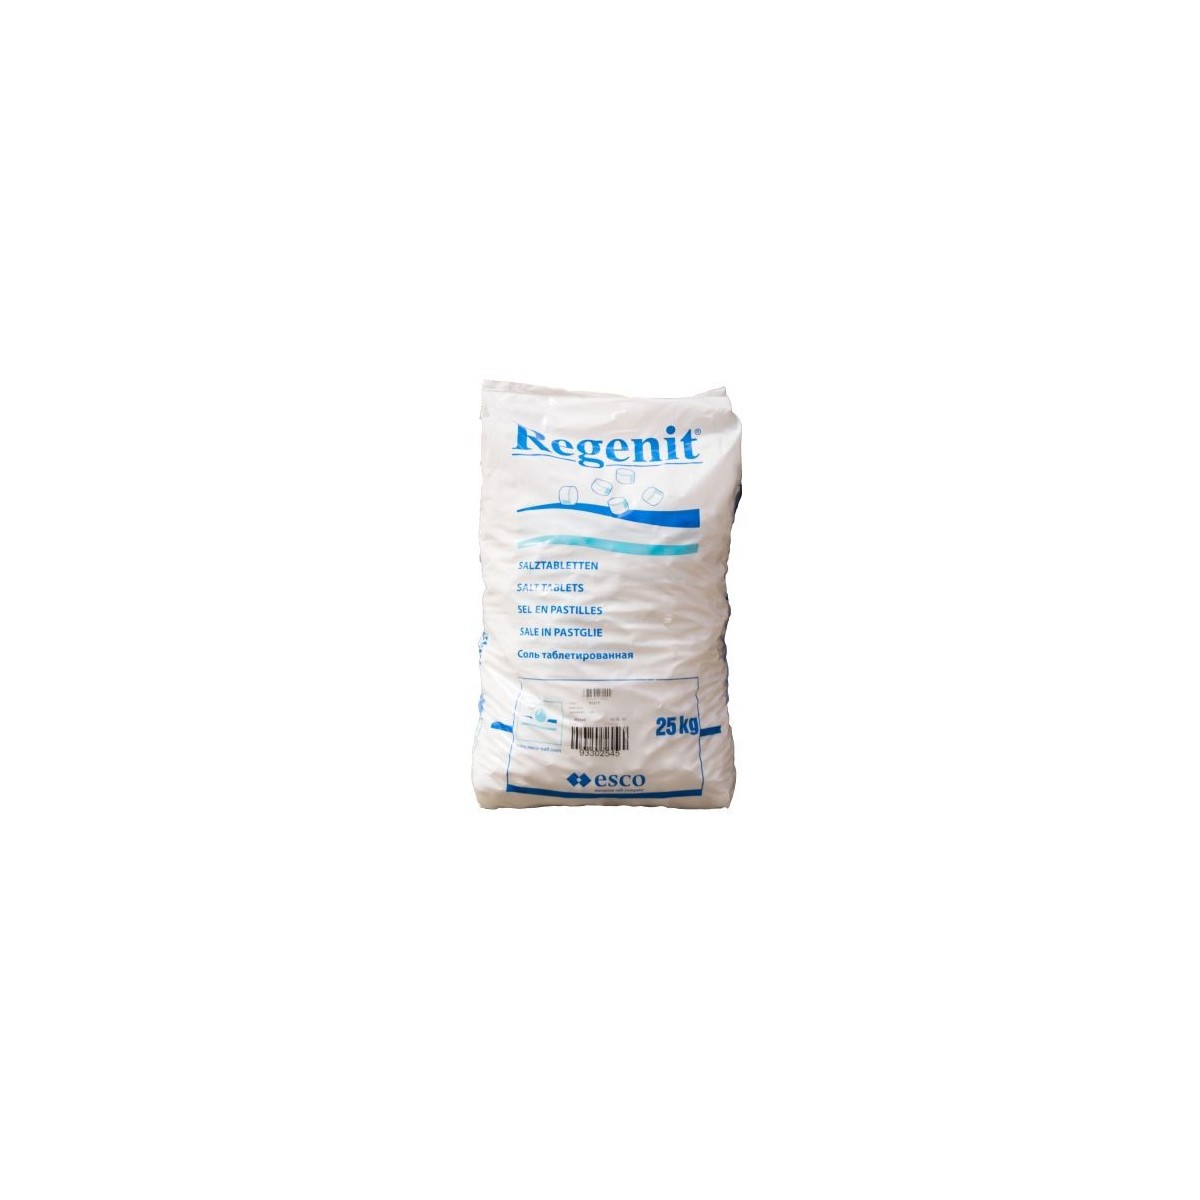 REGENIT SALT FOR SOFTENER 25KG  BAG